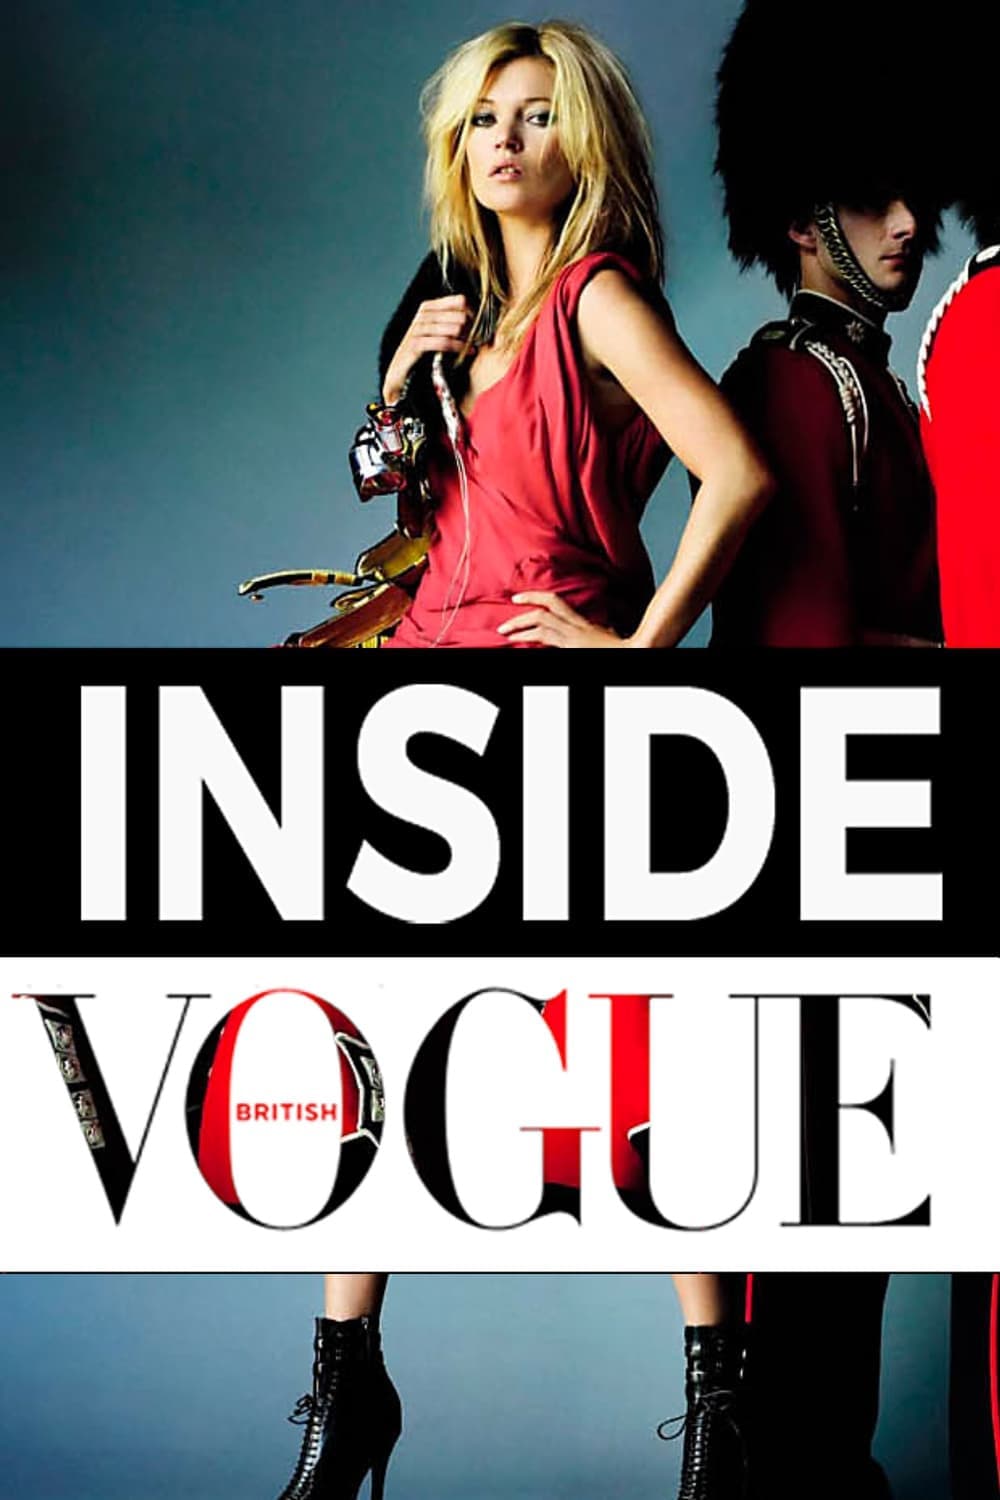 TODO SOBRE EL VOGUE BRITANICO / Dentro de Vogue Reino Unido